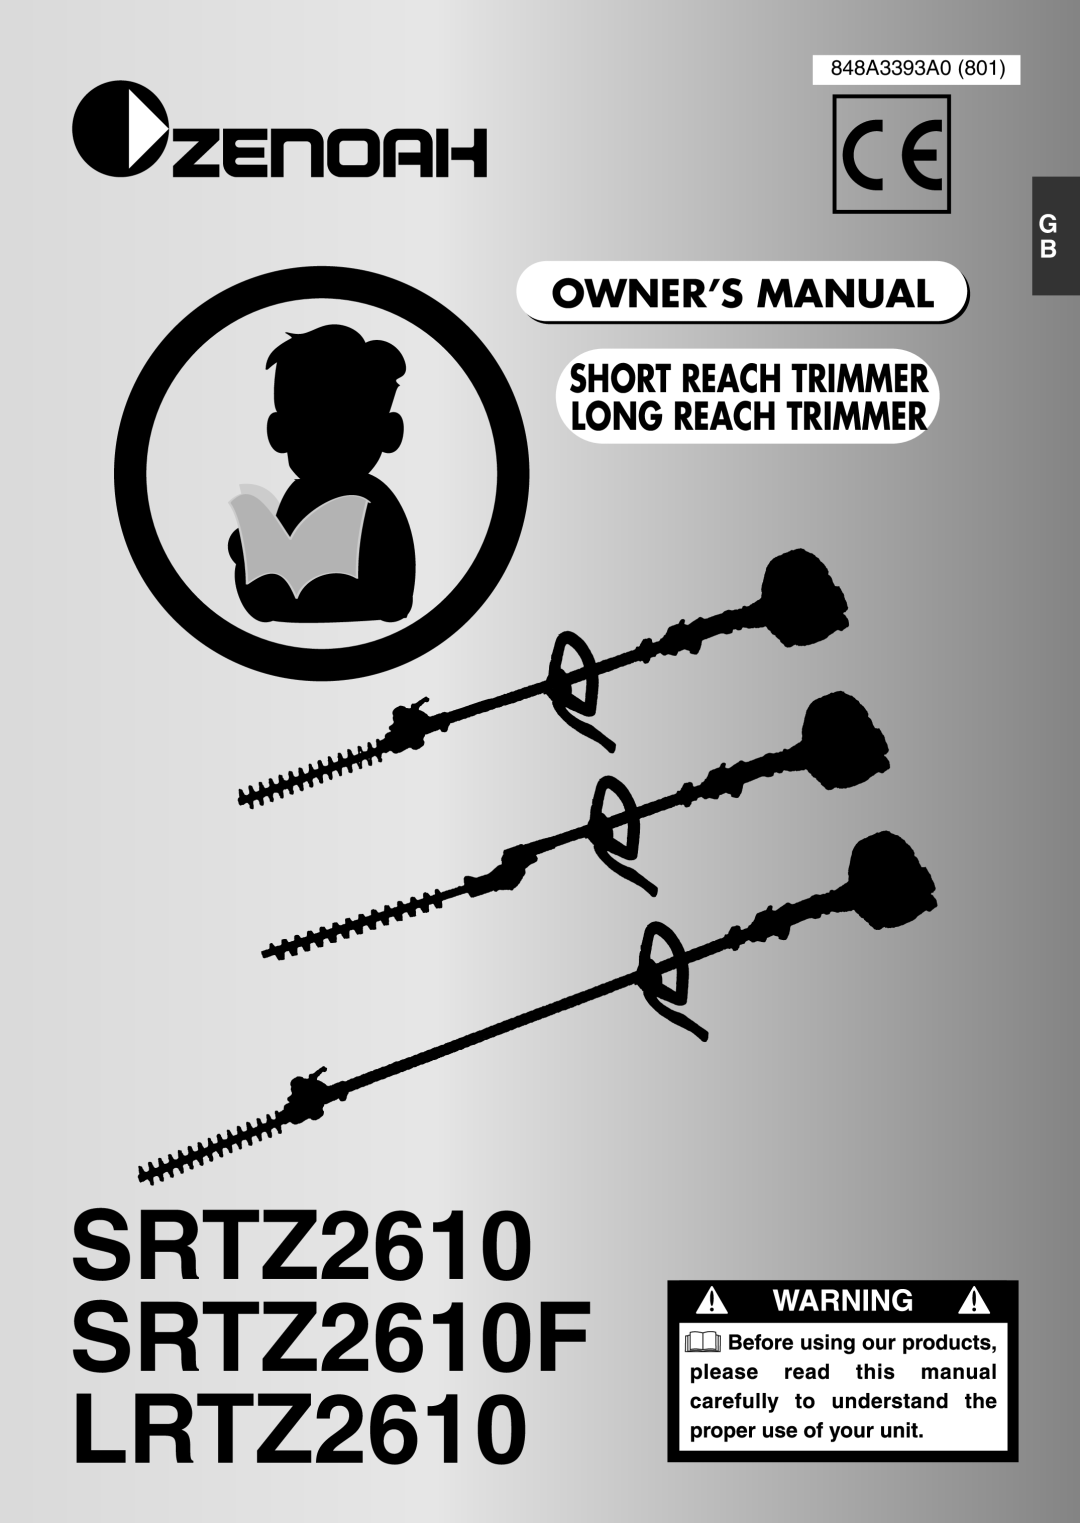 Zenoah owner manual SRTZ2610 SRTZ2610F LRTZ2610, Short Reach Trimmer Long Reach Trimmer, 848A3393A0 